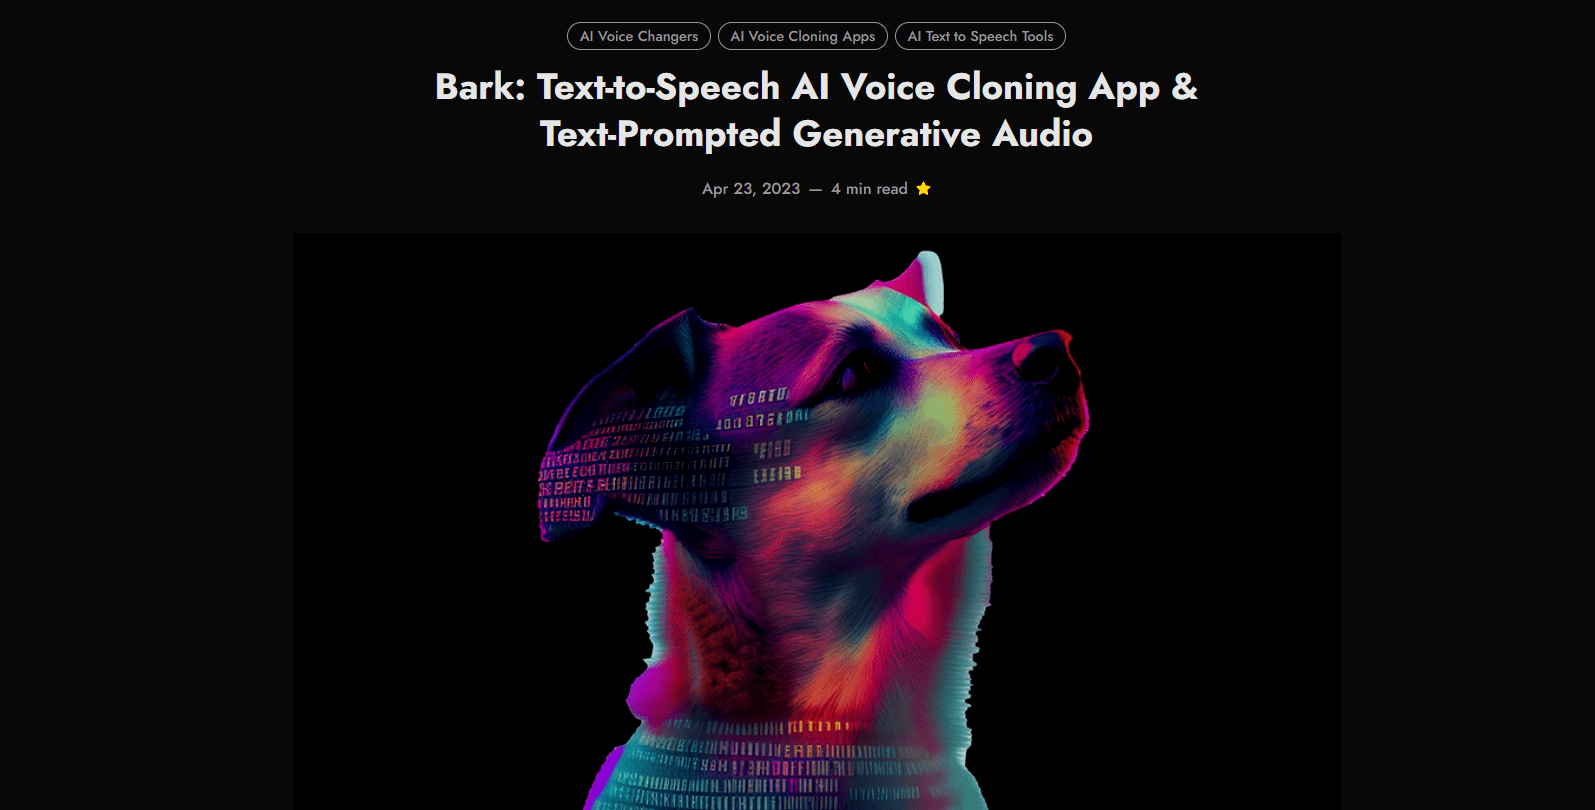 BARK Voice Cloning App